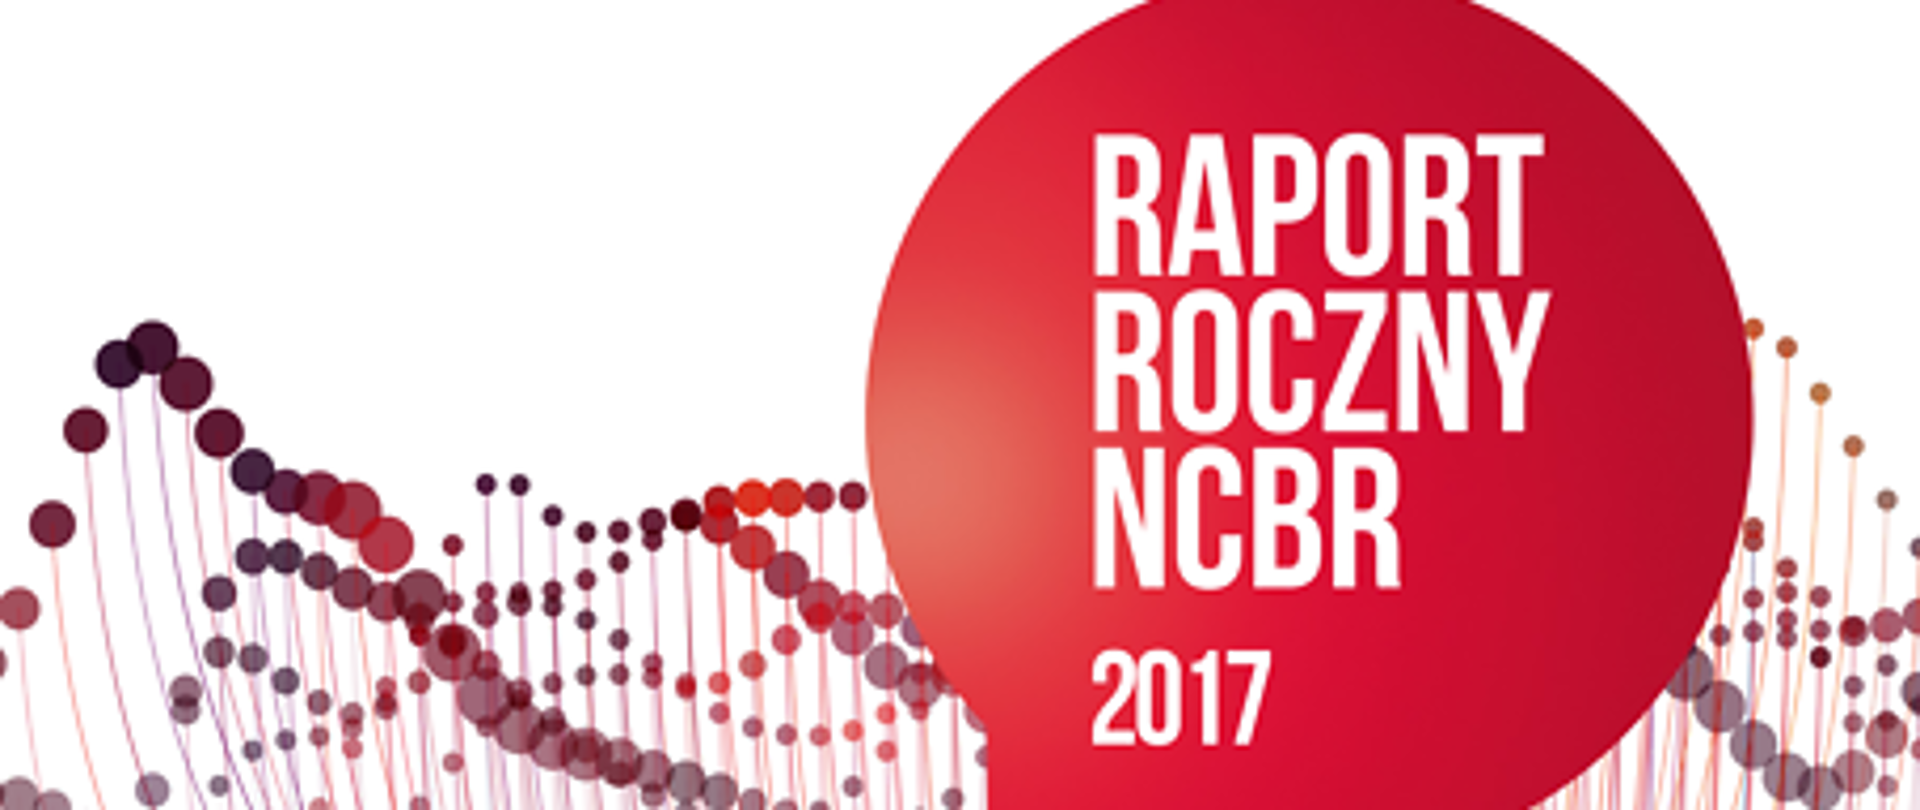 Napis Raport Roczny NCBR 2017 na czerwonym tle, pod spodem logo NCBR